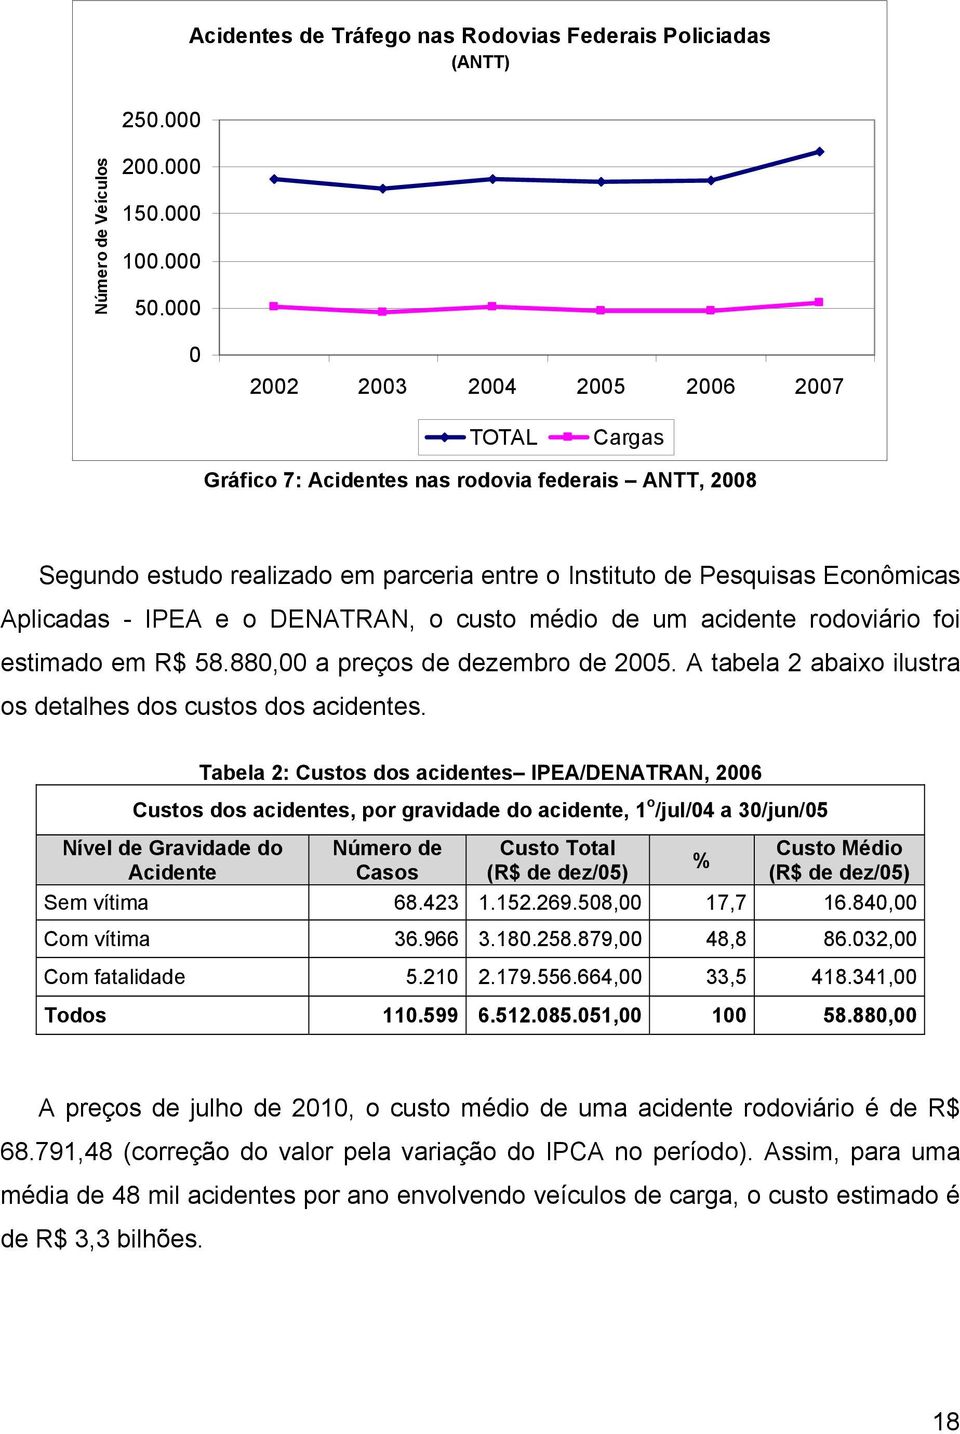 o DENATRAN, o custo médio de um acidente rodoviário foi estimado em R$ 58.880,00 a preços de dezembro de 2005. A tabela 2 abaixo ilustra os detalhes dos custos dos acidentes.